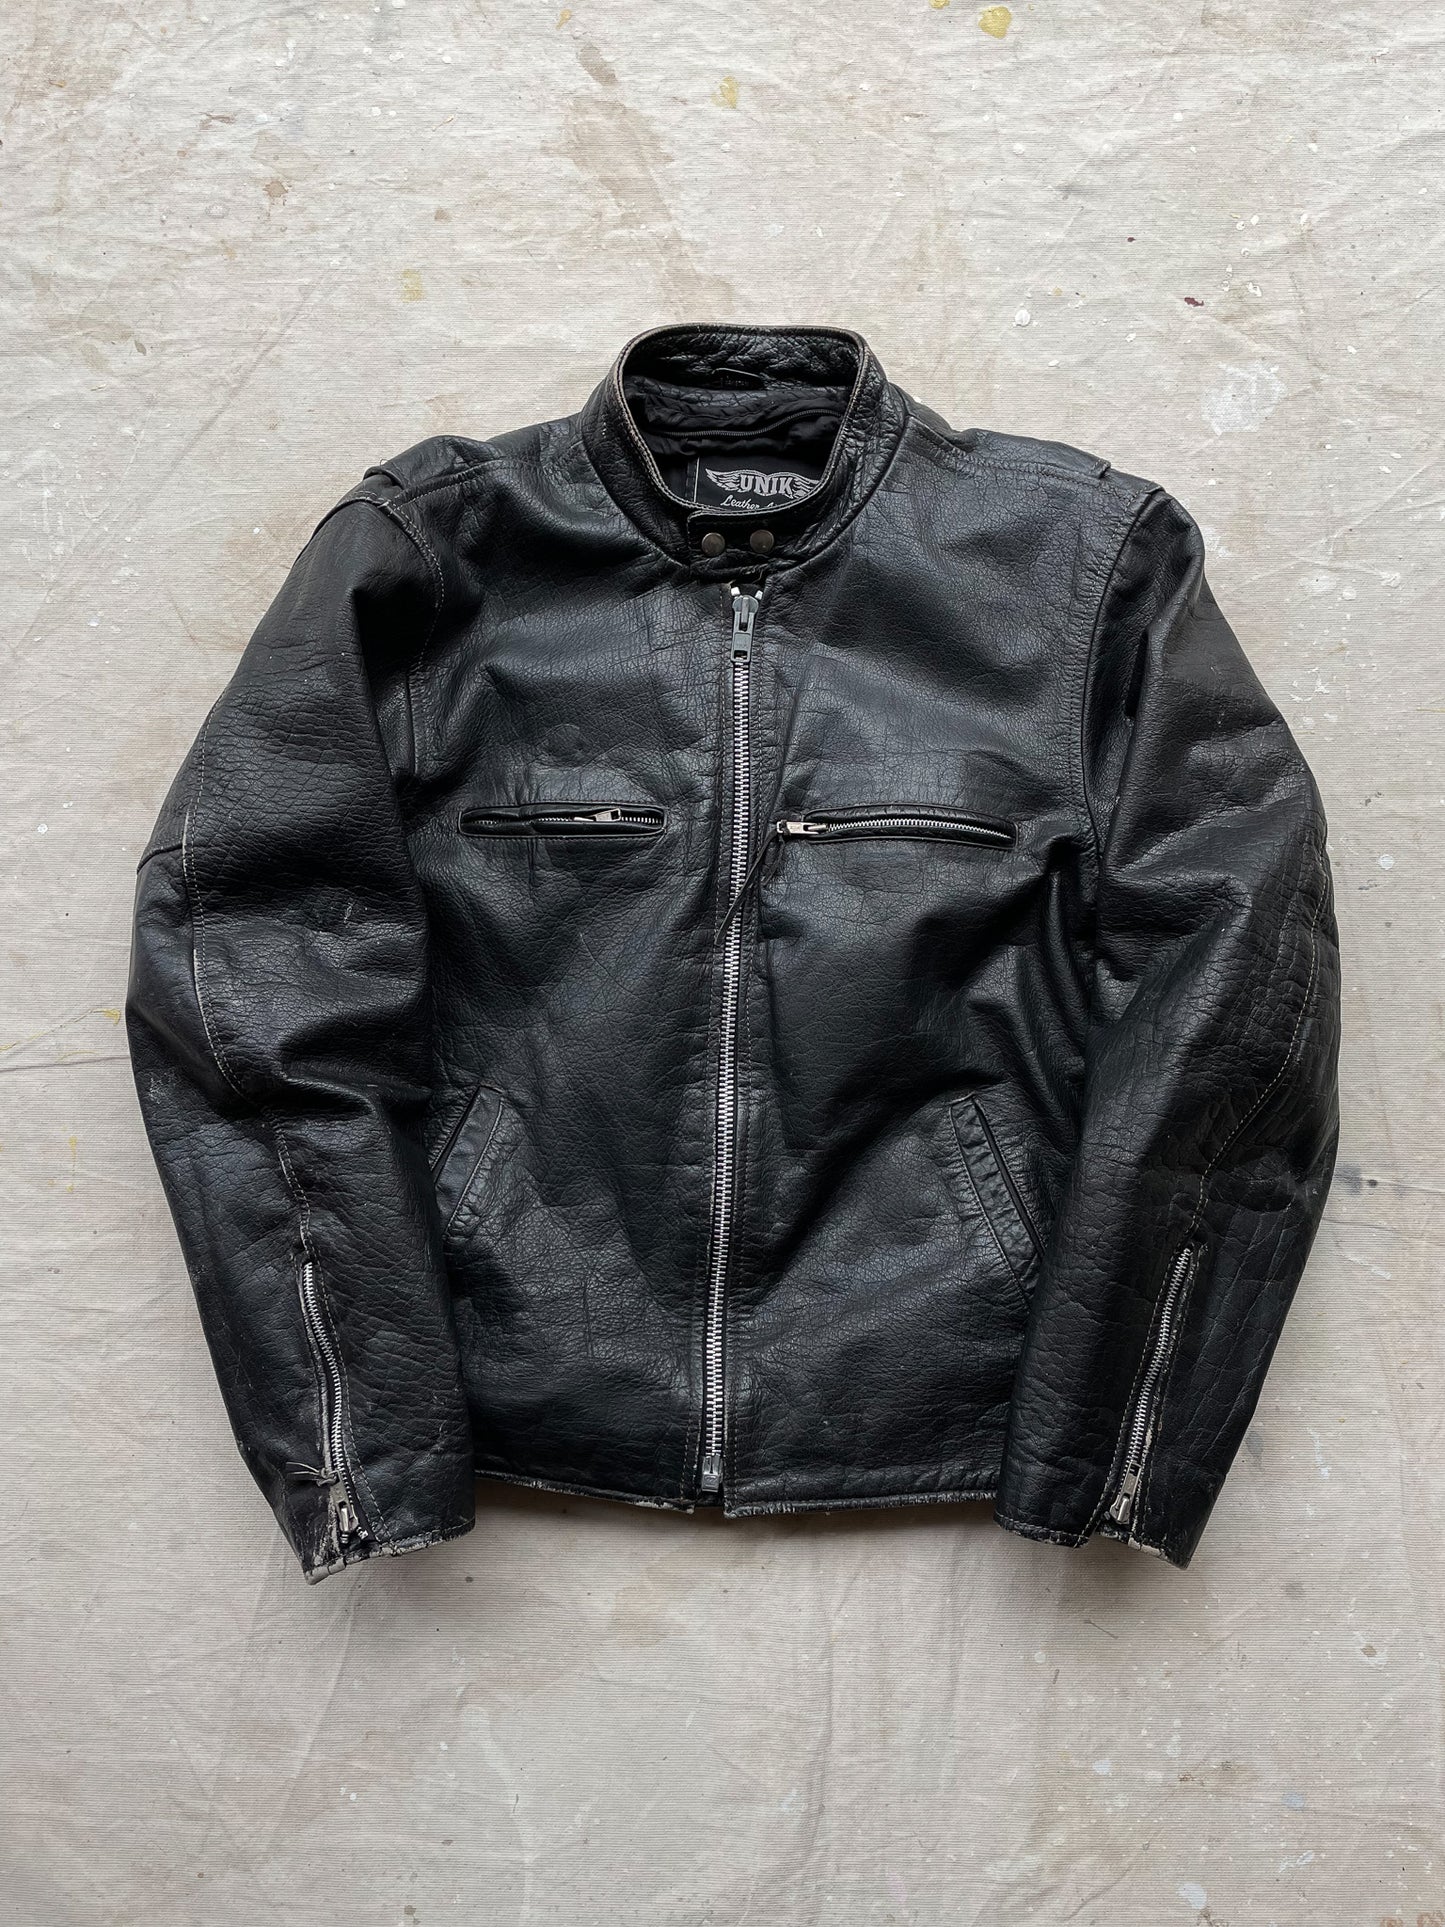 Harley-Davidson Patched Leather Jacket—[L]